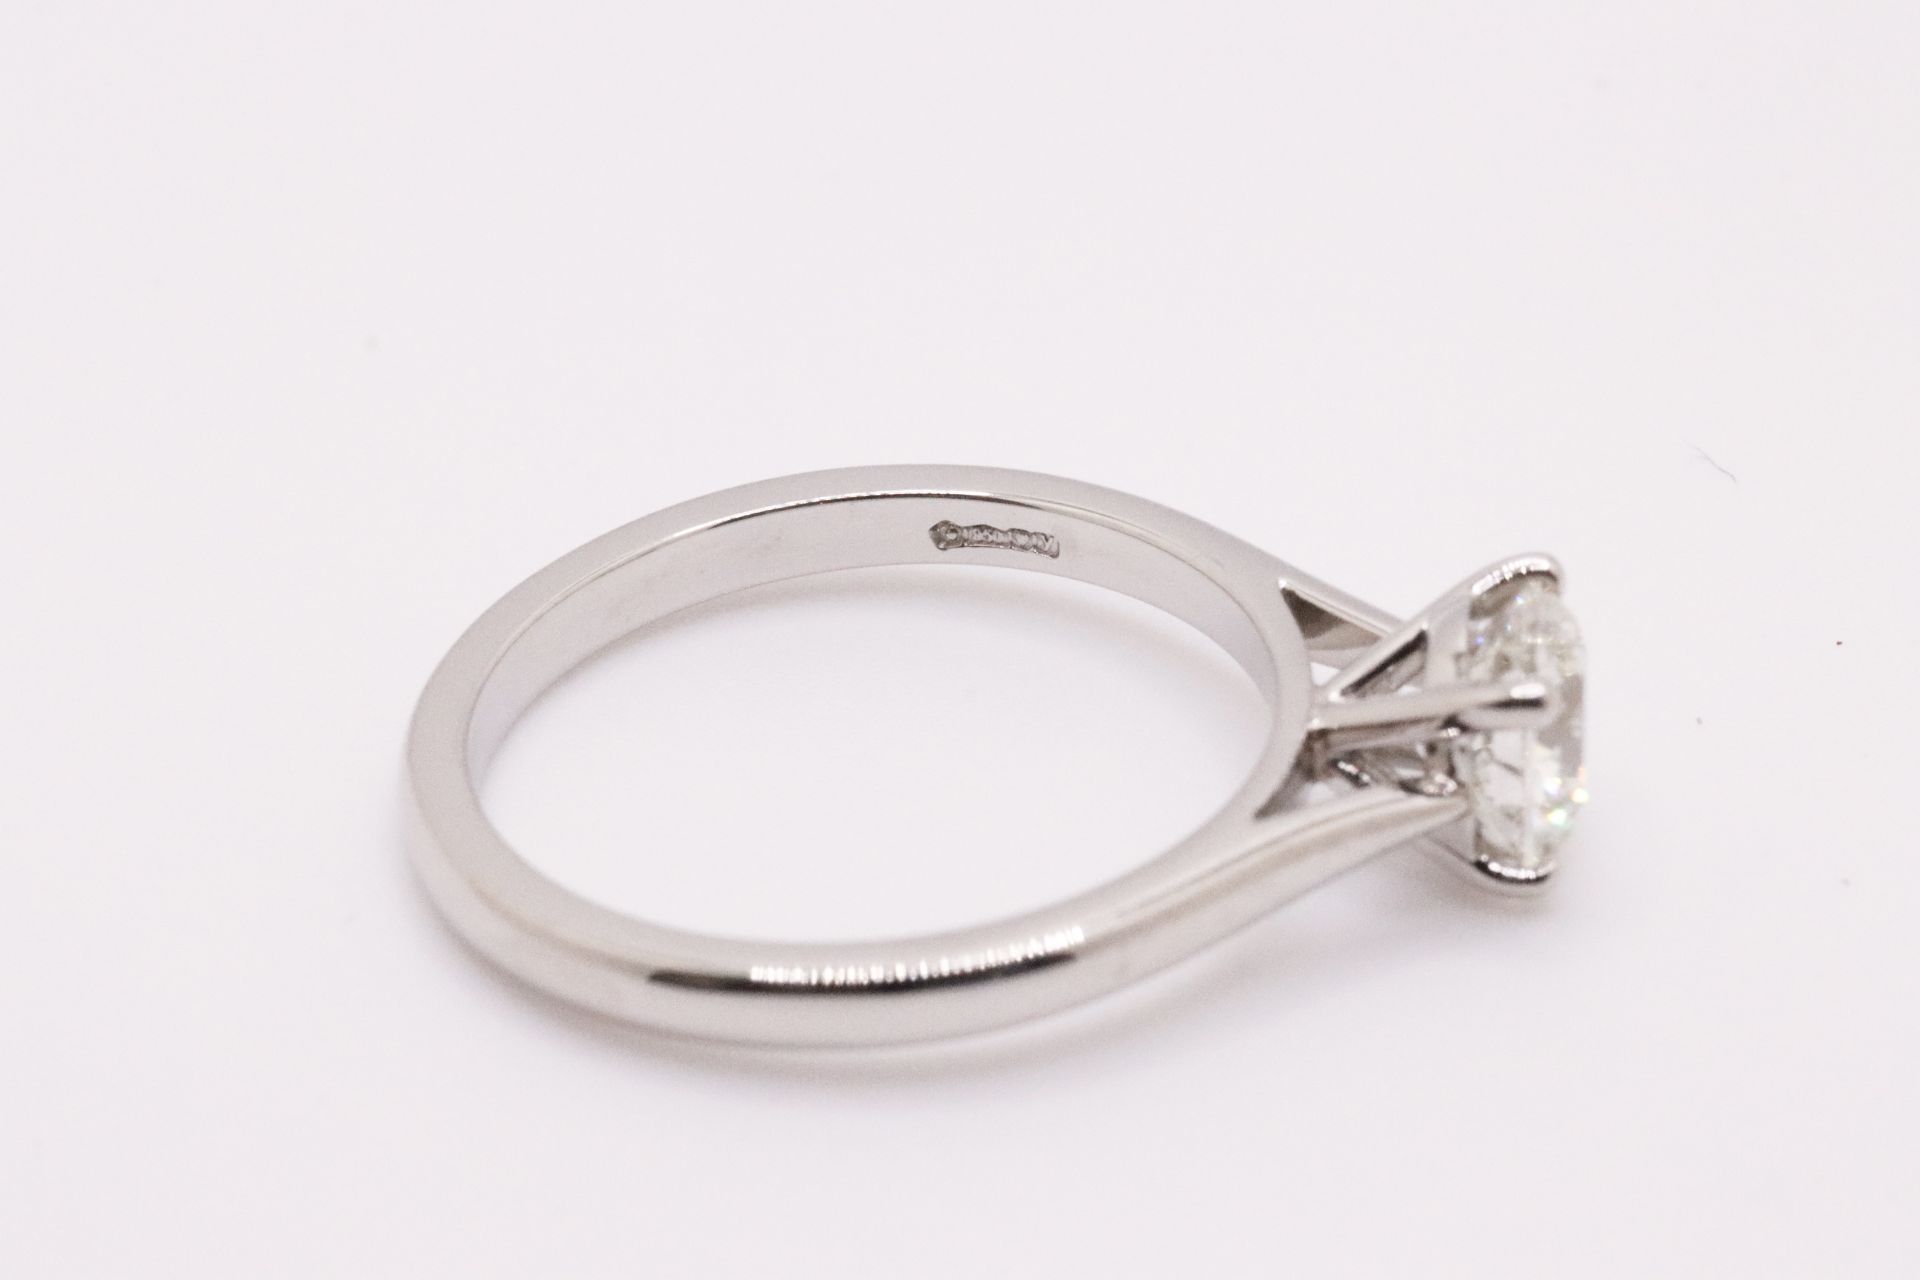 Round Brilliant Cut Natural Diamond Platinum Ring 1.20 Carat D Colour VS2 Clarity ID EX EX - GIA - Image 3 of 6